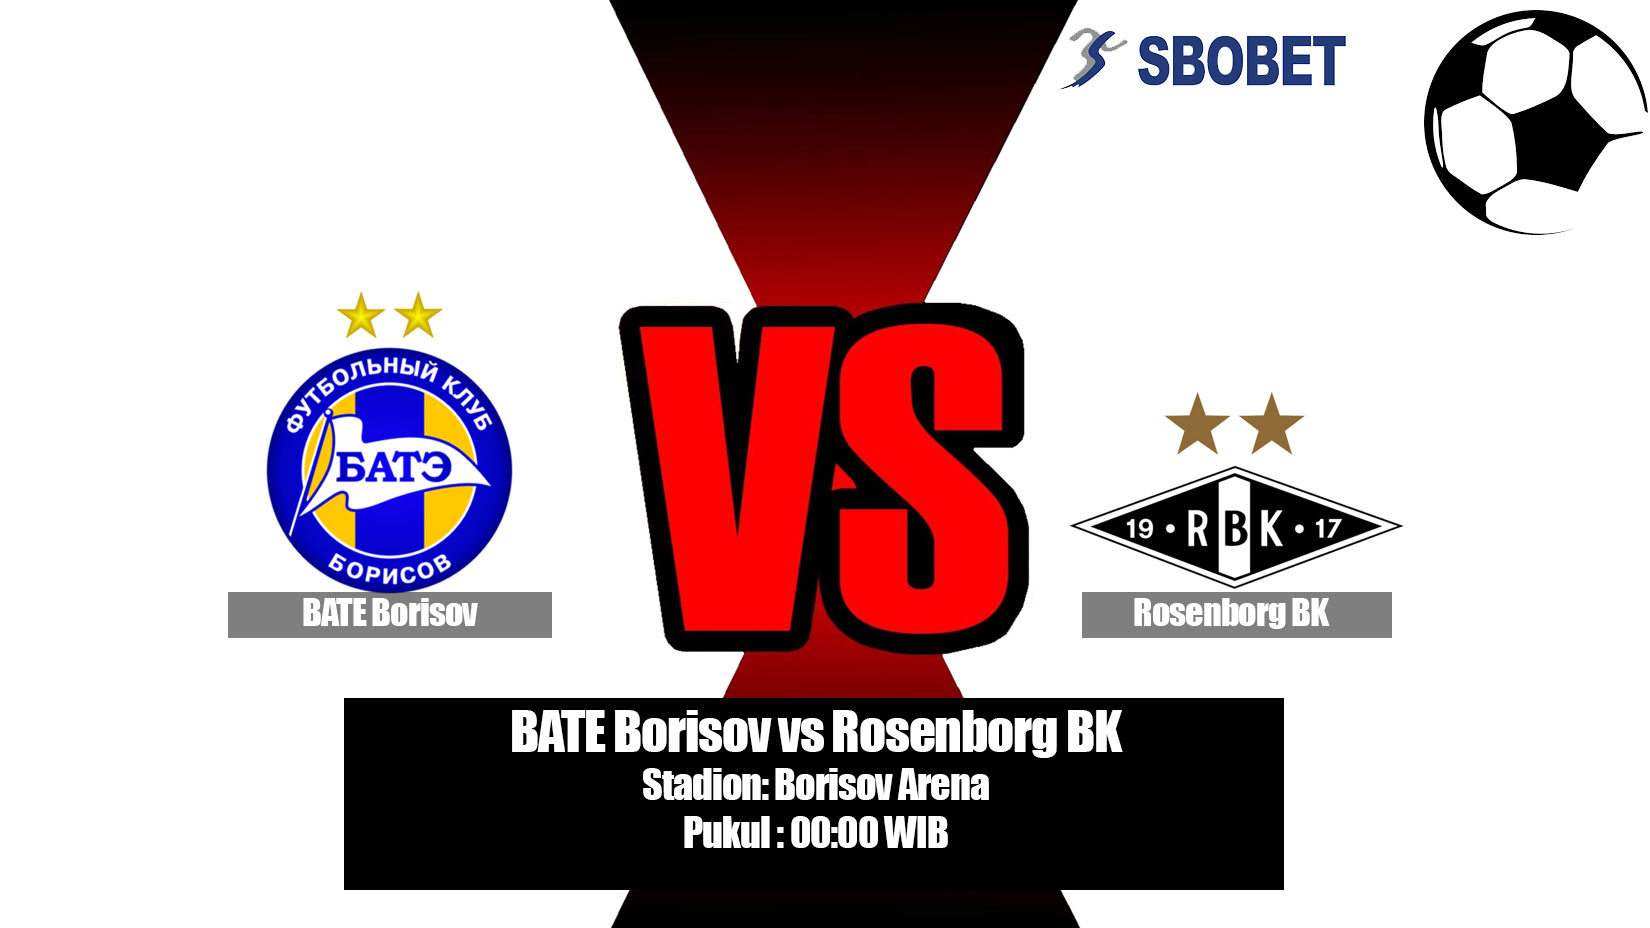 Prediksi Bola BATE Borisov vs Rosenborg BK 25 Juli 2019